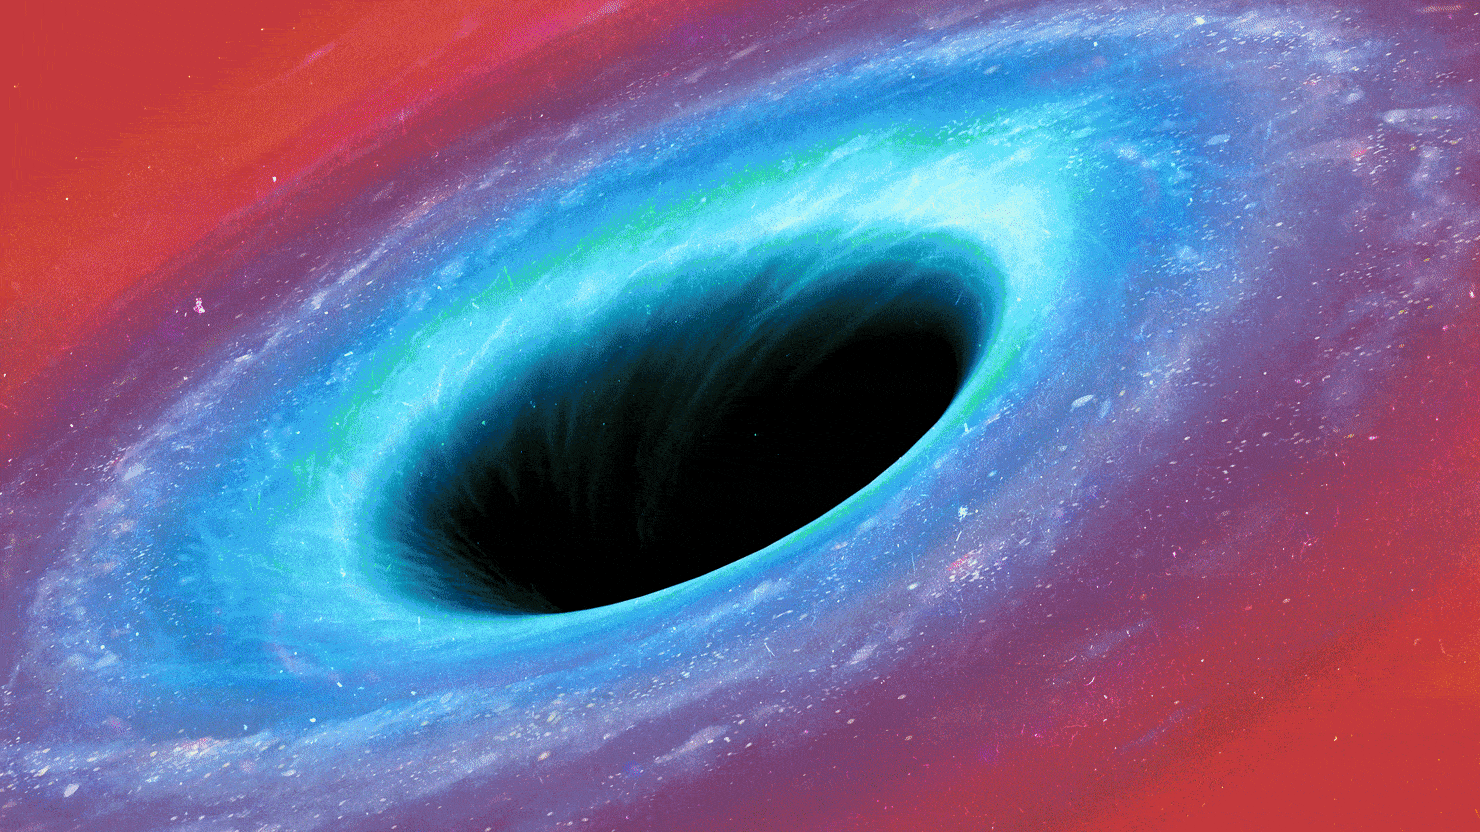 新しい物理学理論は、ブラックホールが宇宙の膨張と収縮サイクルの核心であることを示唆しています